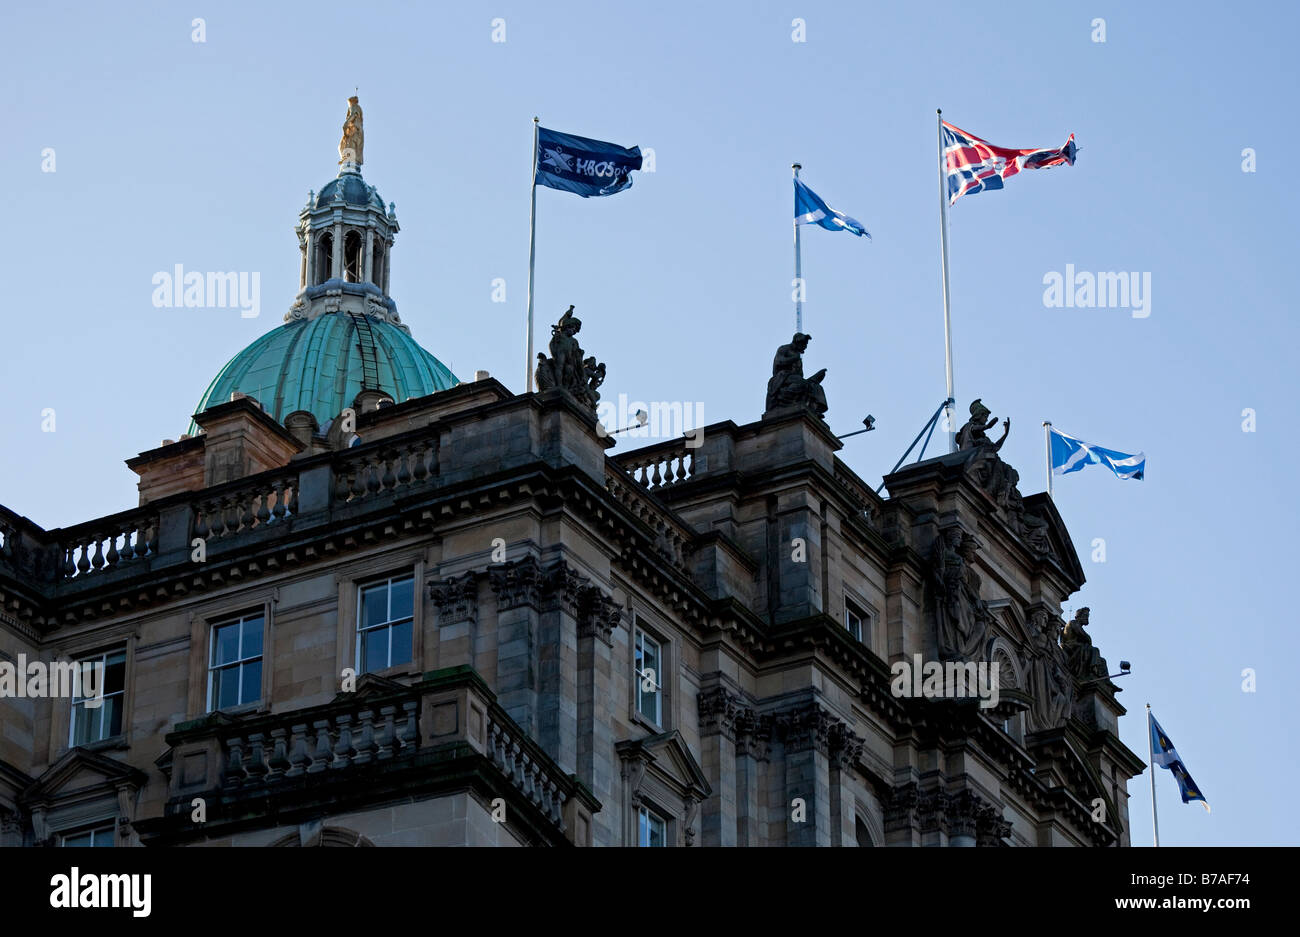 Le drapeau de Hbos le jour avant le monticule bureau a été repris par la Lloyds Banking Group, Édimbourg, Écosse, Royaume-Uni, Europe Banque D'Images